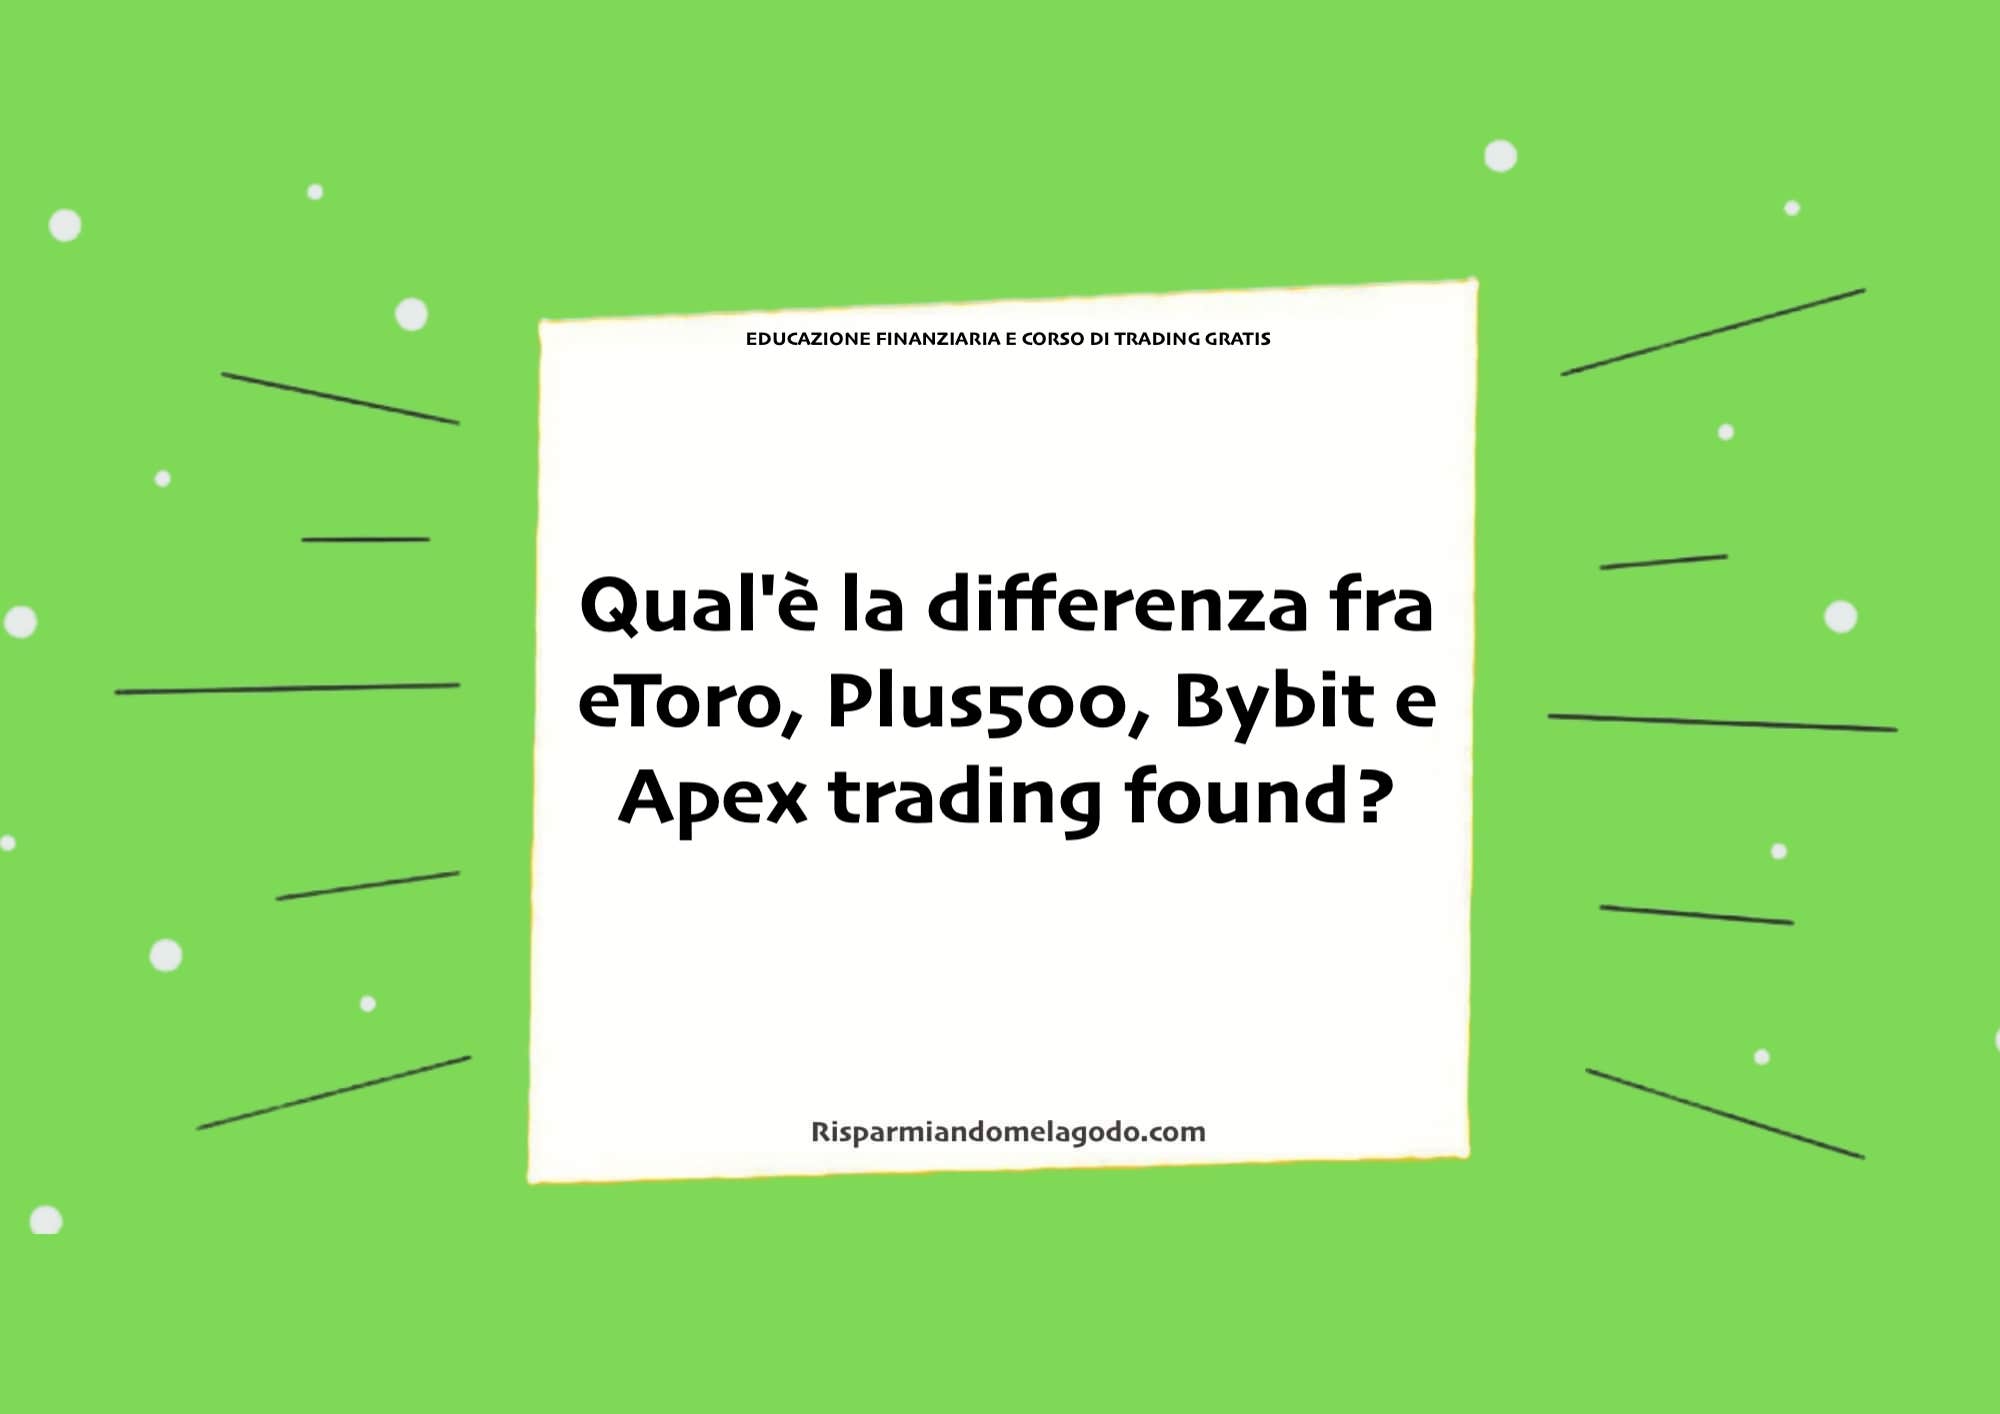 Qual'è la differenza fra eToro, Plus500, Bybit e Apex trading found?